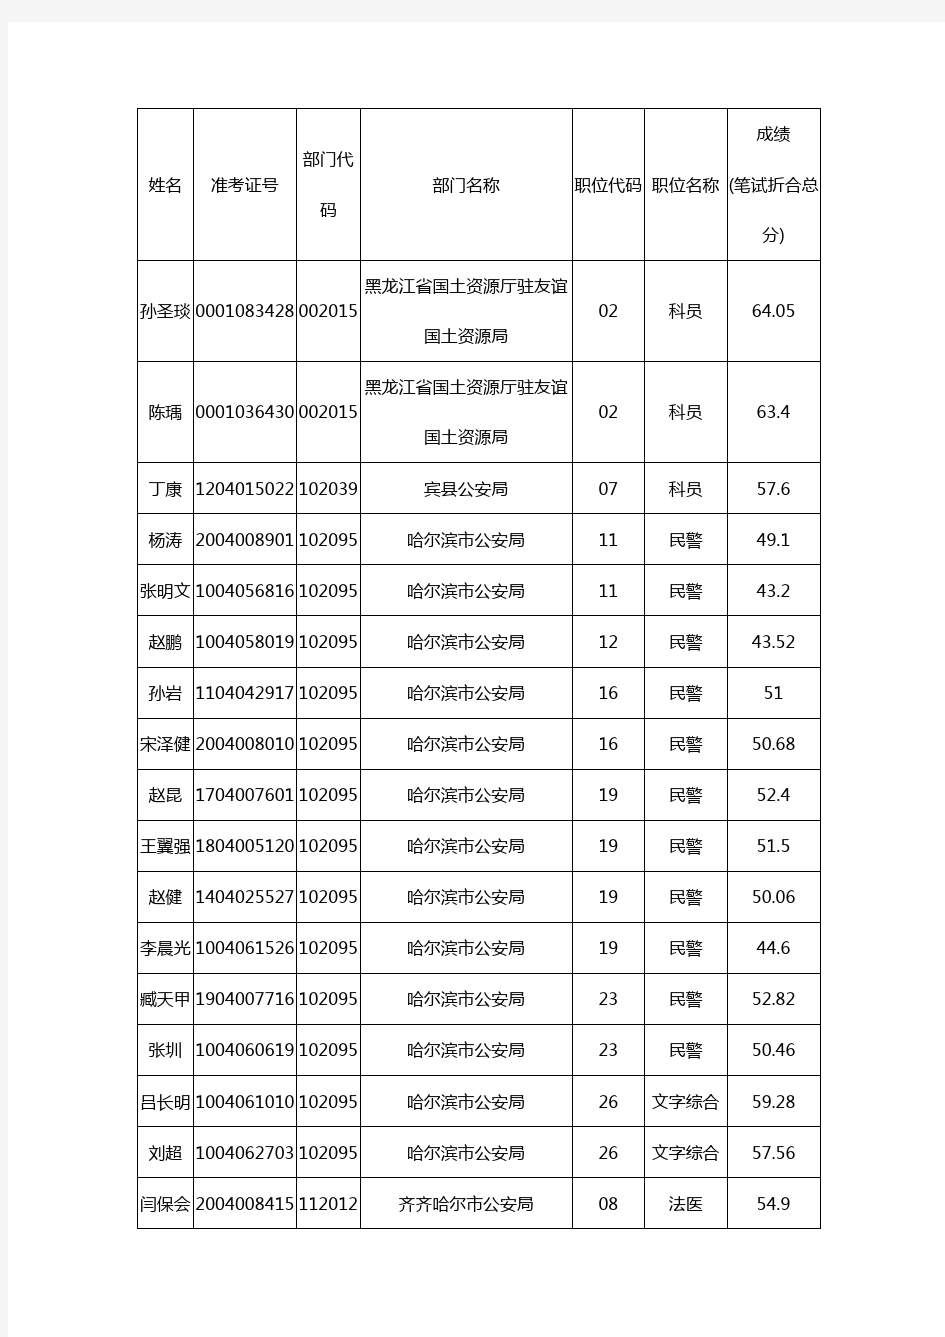 2014年黑龙江省公务员考试面试调剂合格人员名单